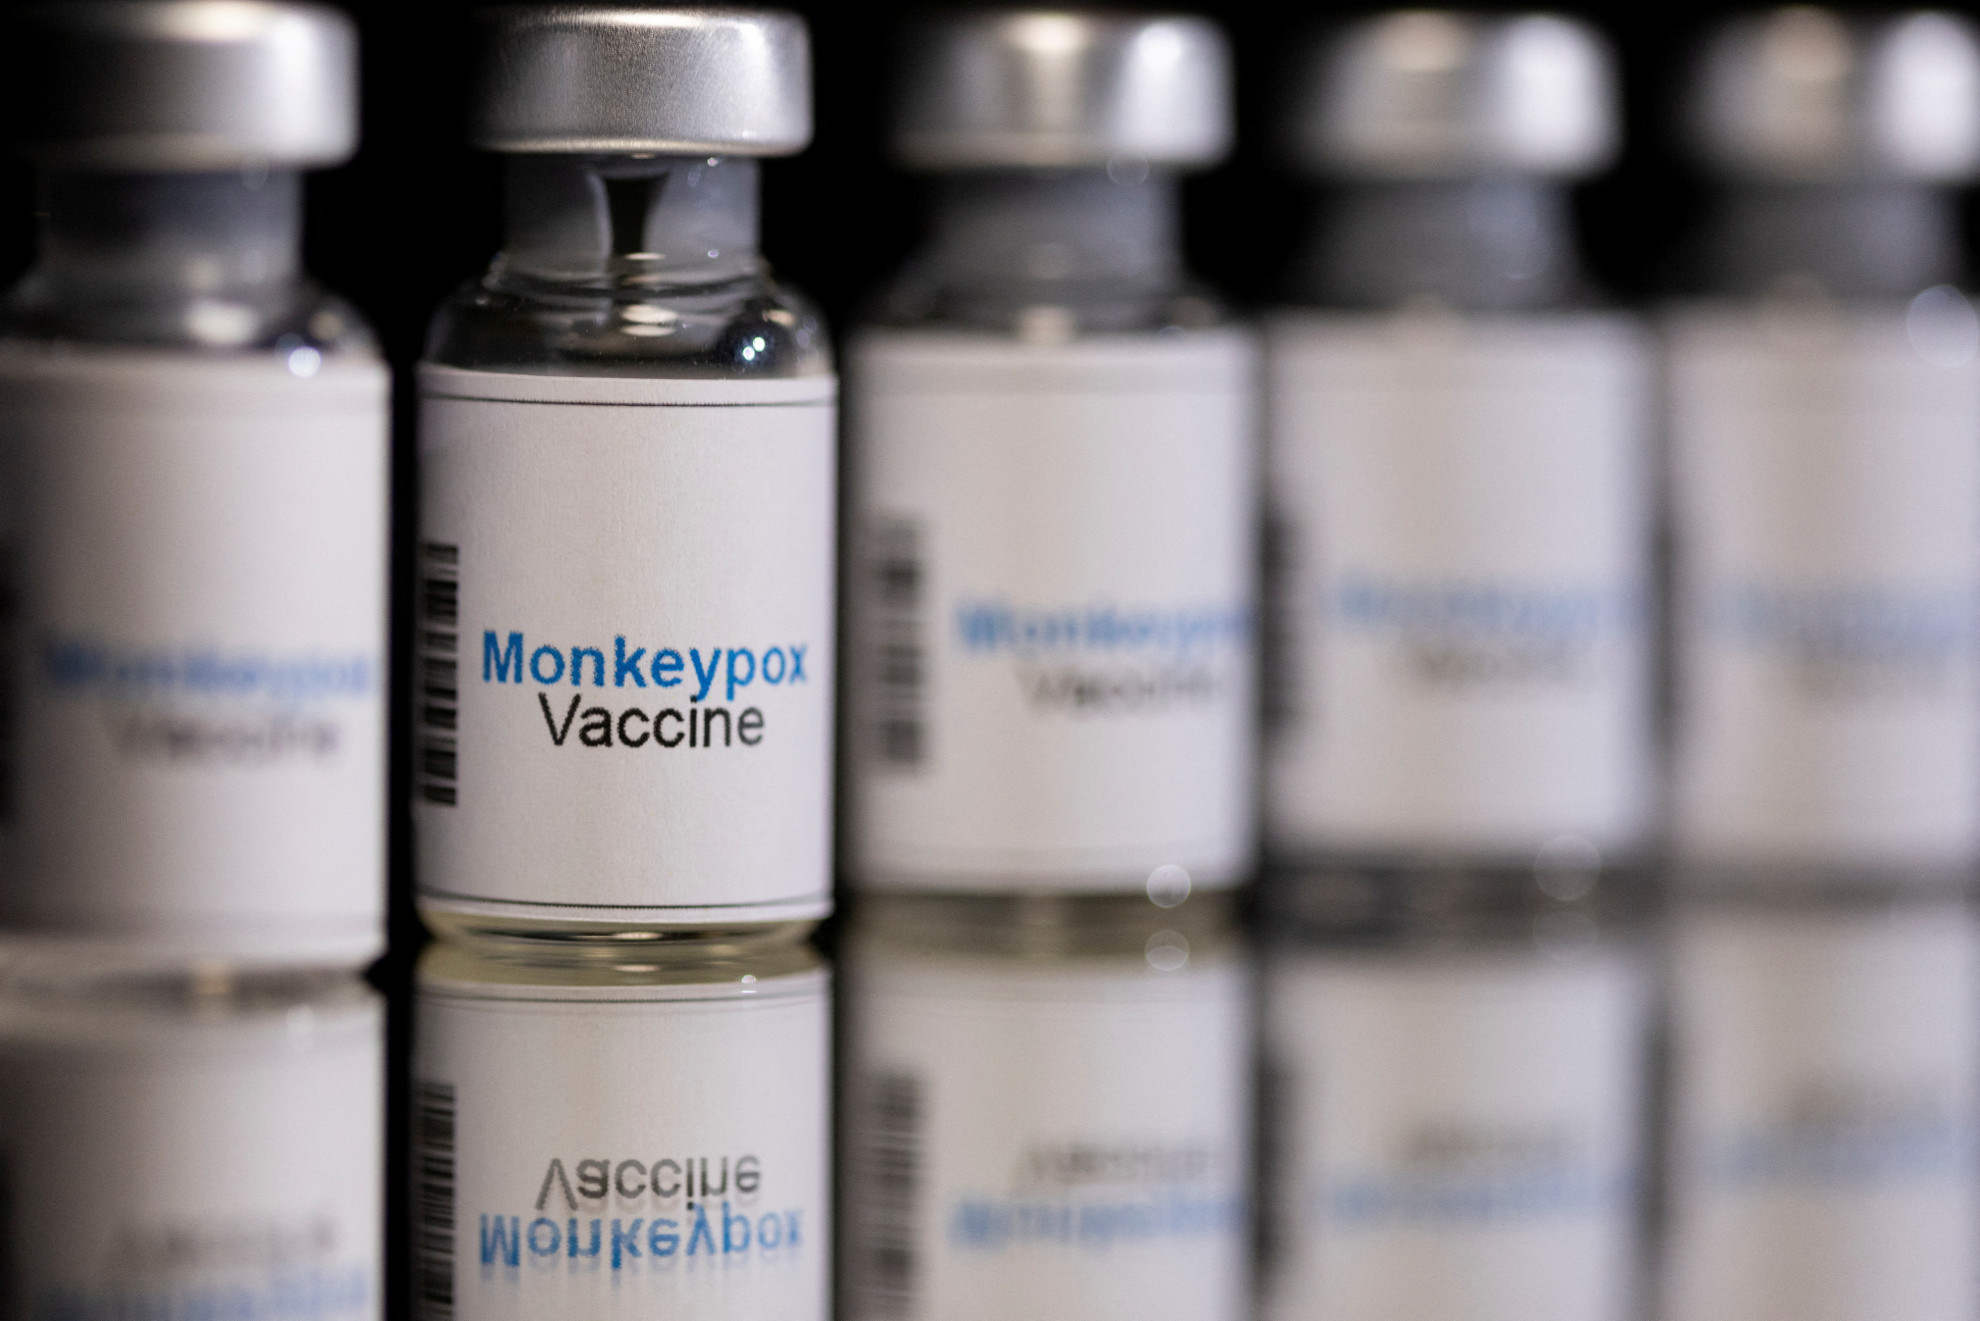 vaiolo-delle-scimmie,-in-corso-la-distribuzione-dei-vaccini